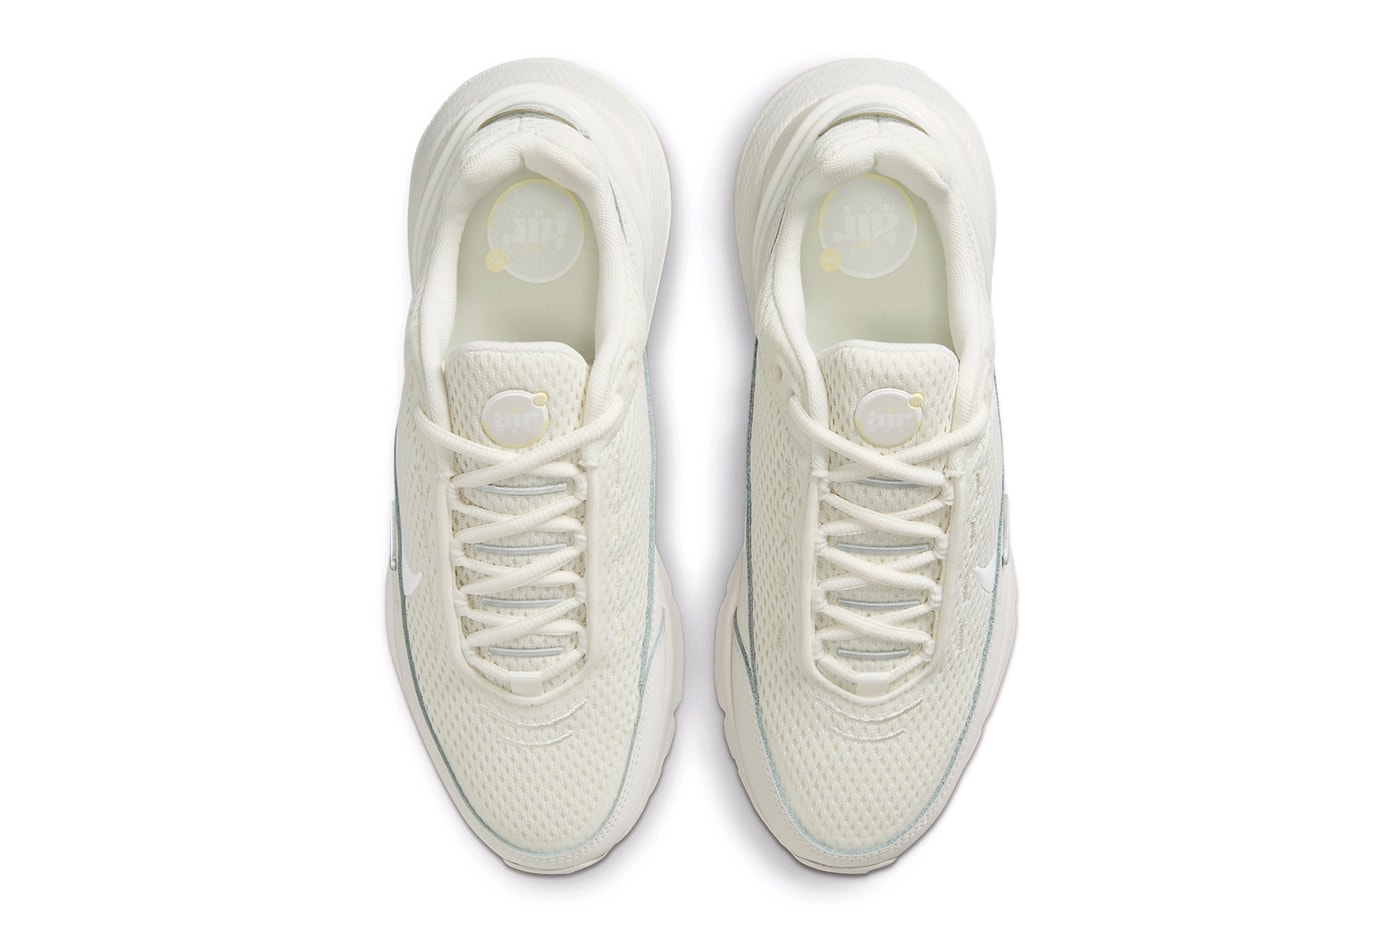 ナイキ エア マックス パルスからオールホワイトでまとめた新作が登場 Nike Air Max Pulse Surfaces in Tonal "Sail" Hues for Summer womens all white shoe sneakers comfort everyday